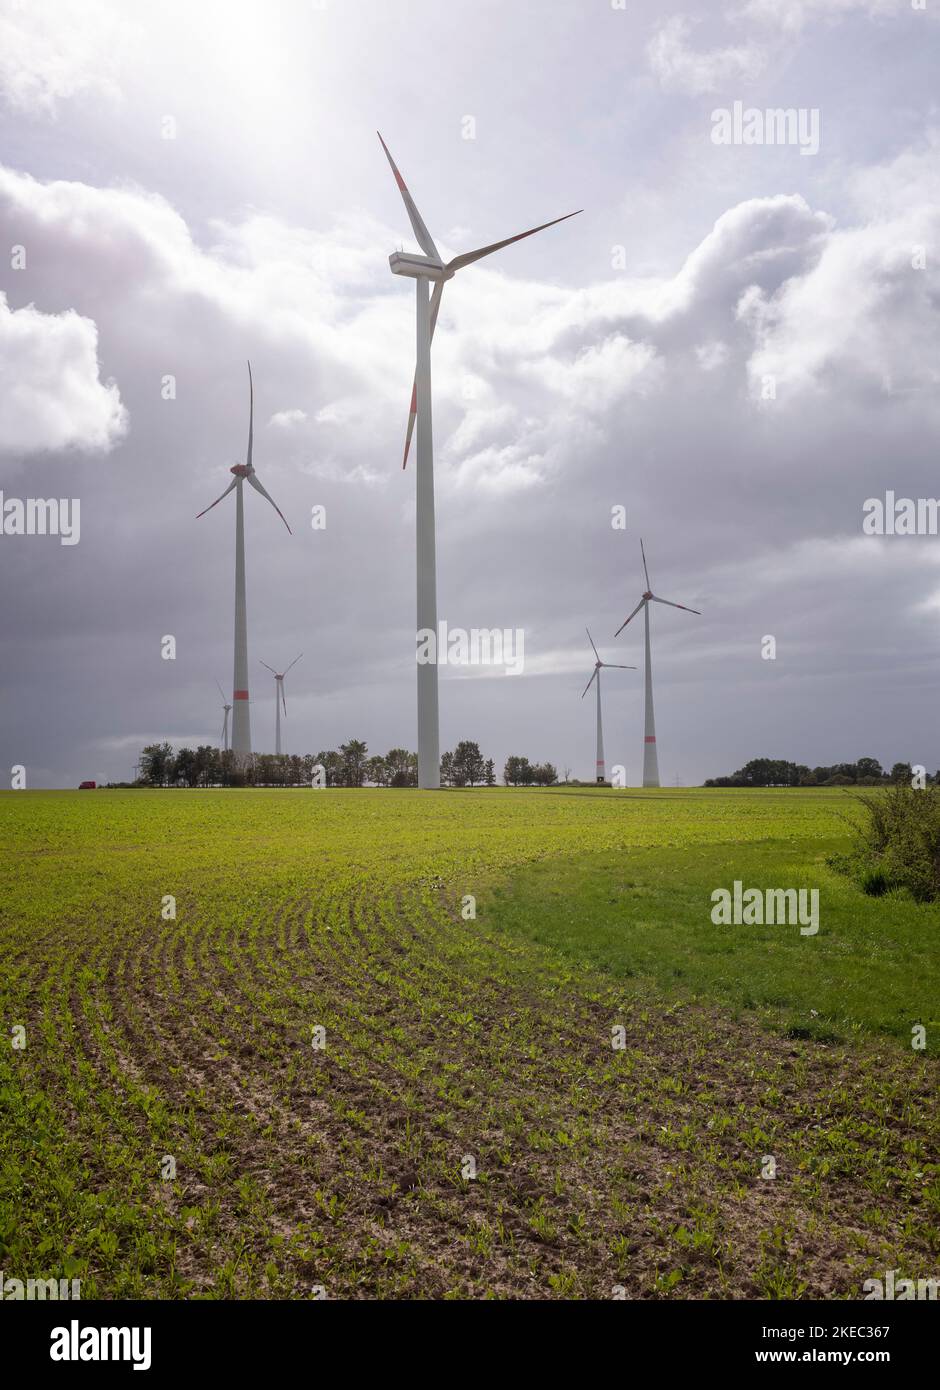 Turbine eoliche su un campo durante il giorno sotto un cielo nuvoloso a Meclemburgo-Pomerania anteriore, Germania. Foto Stock